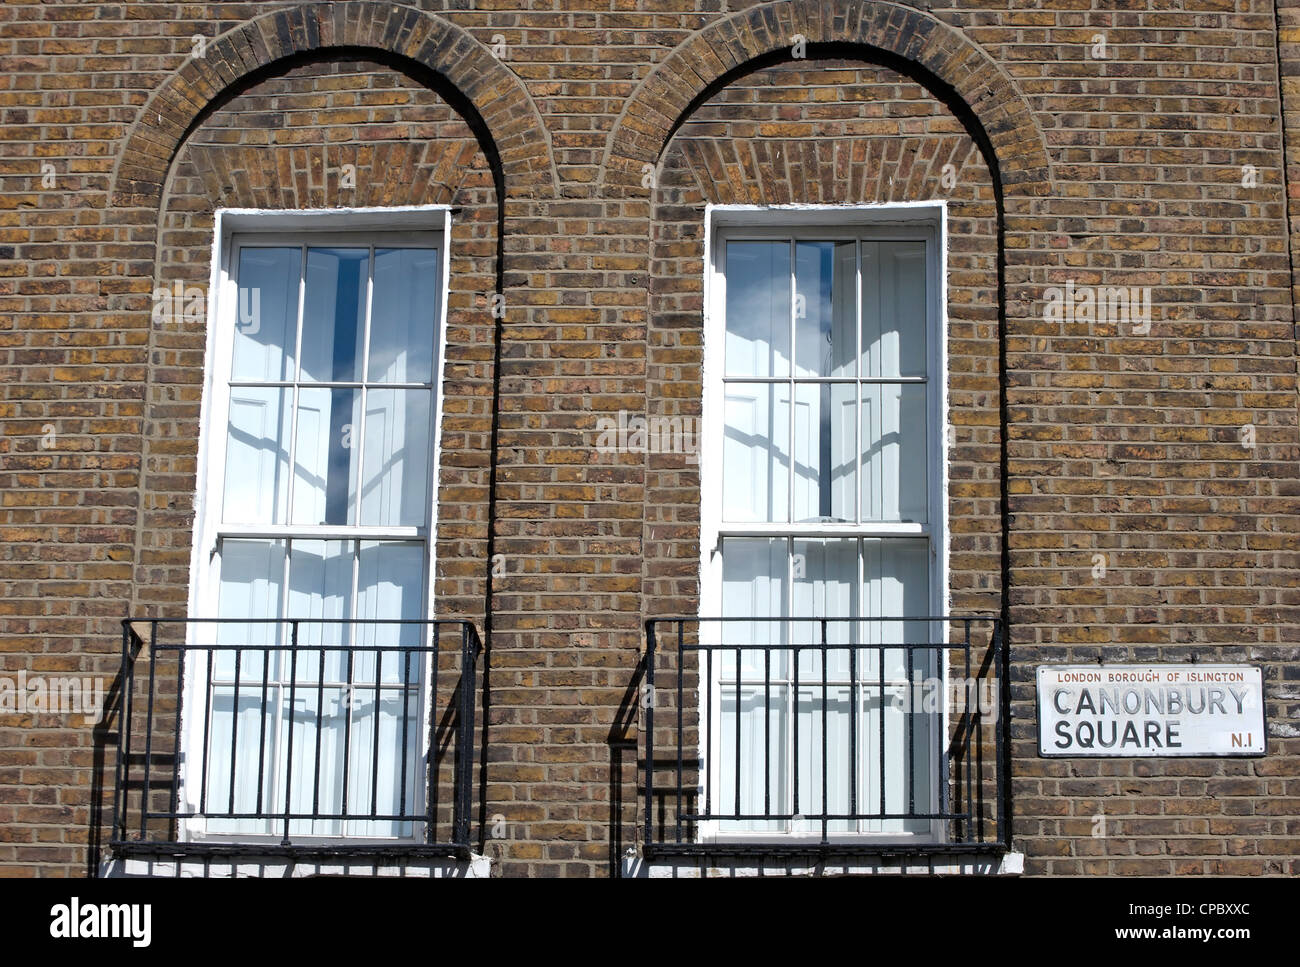 Nom de rue signe pour canonbury square, Islington, Londres, Angleterre, aux côtés de fen de maison du 19e siècle Banque D'Images